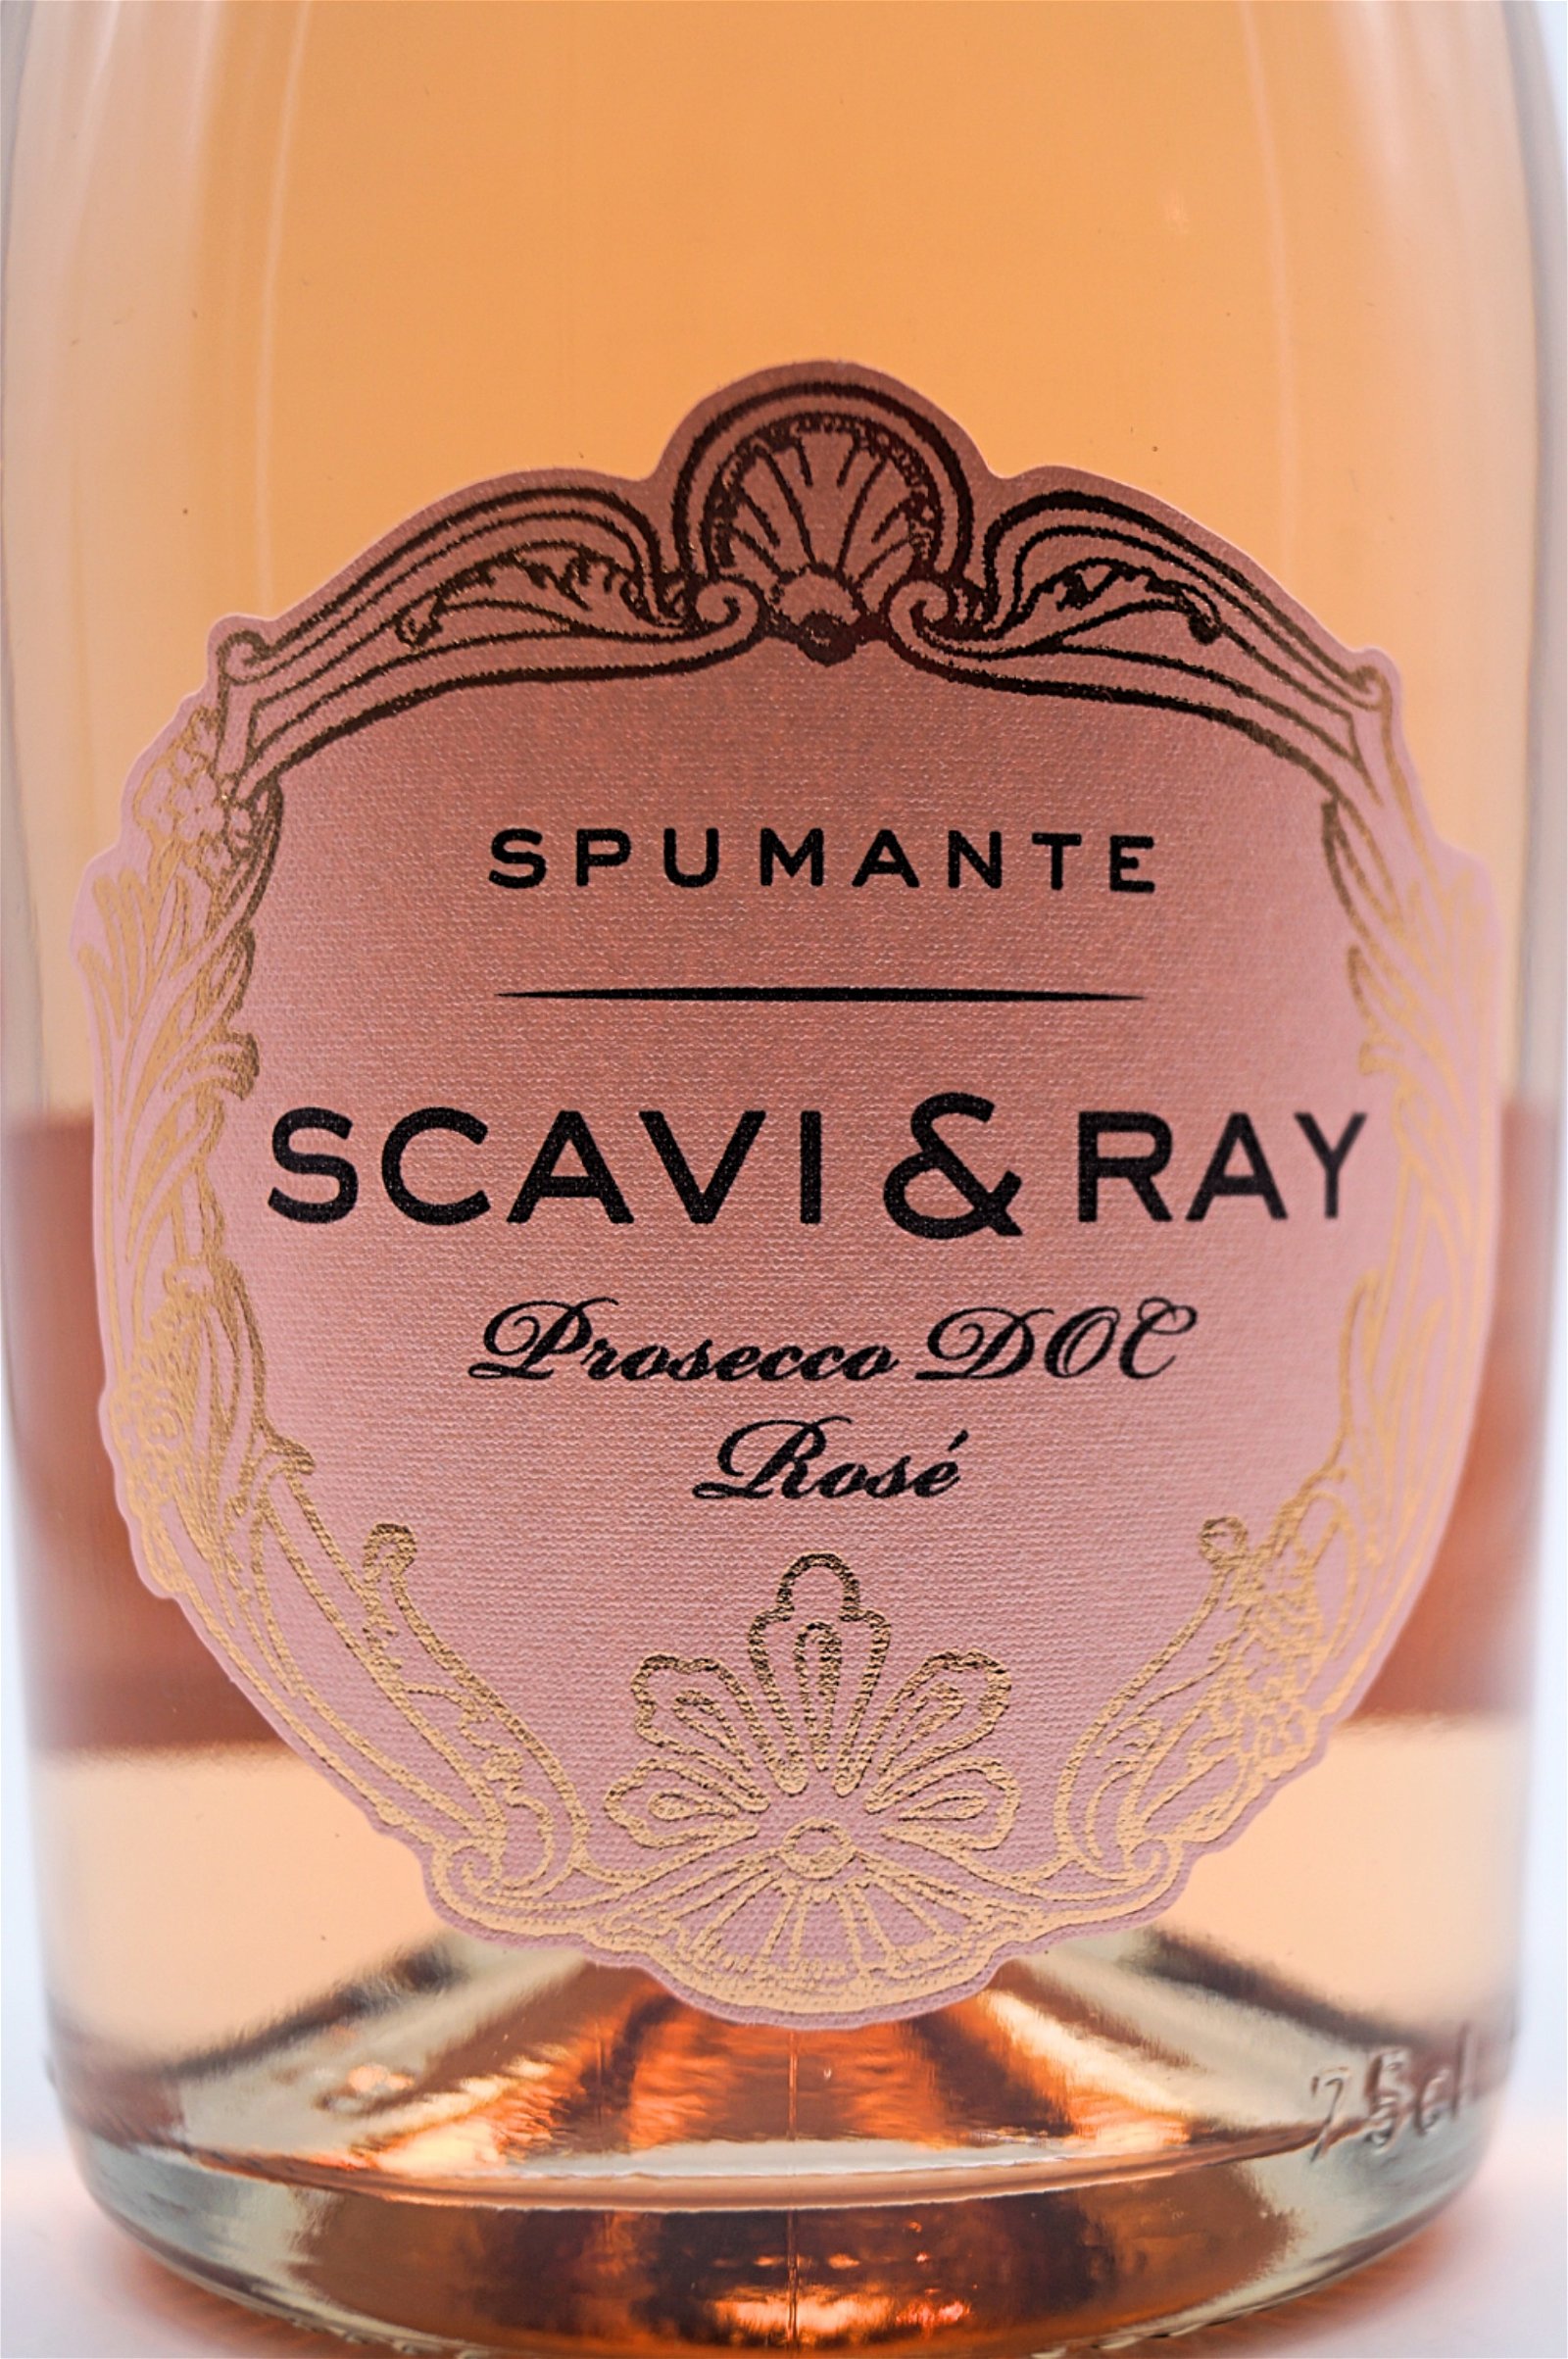 Scavi & Ray Prosecco Spumante Rose